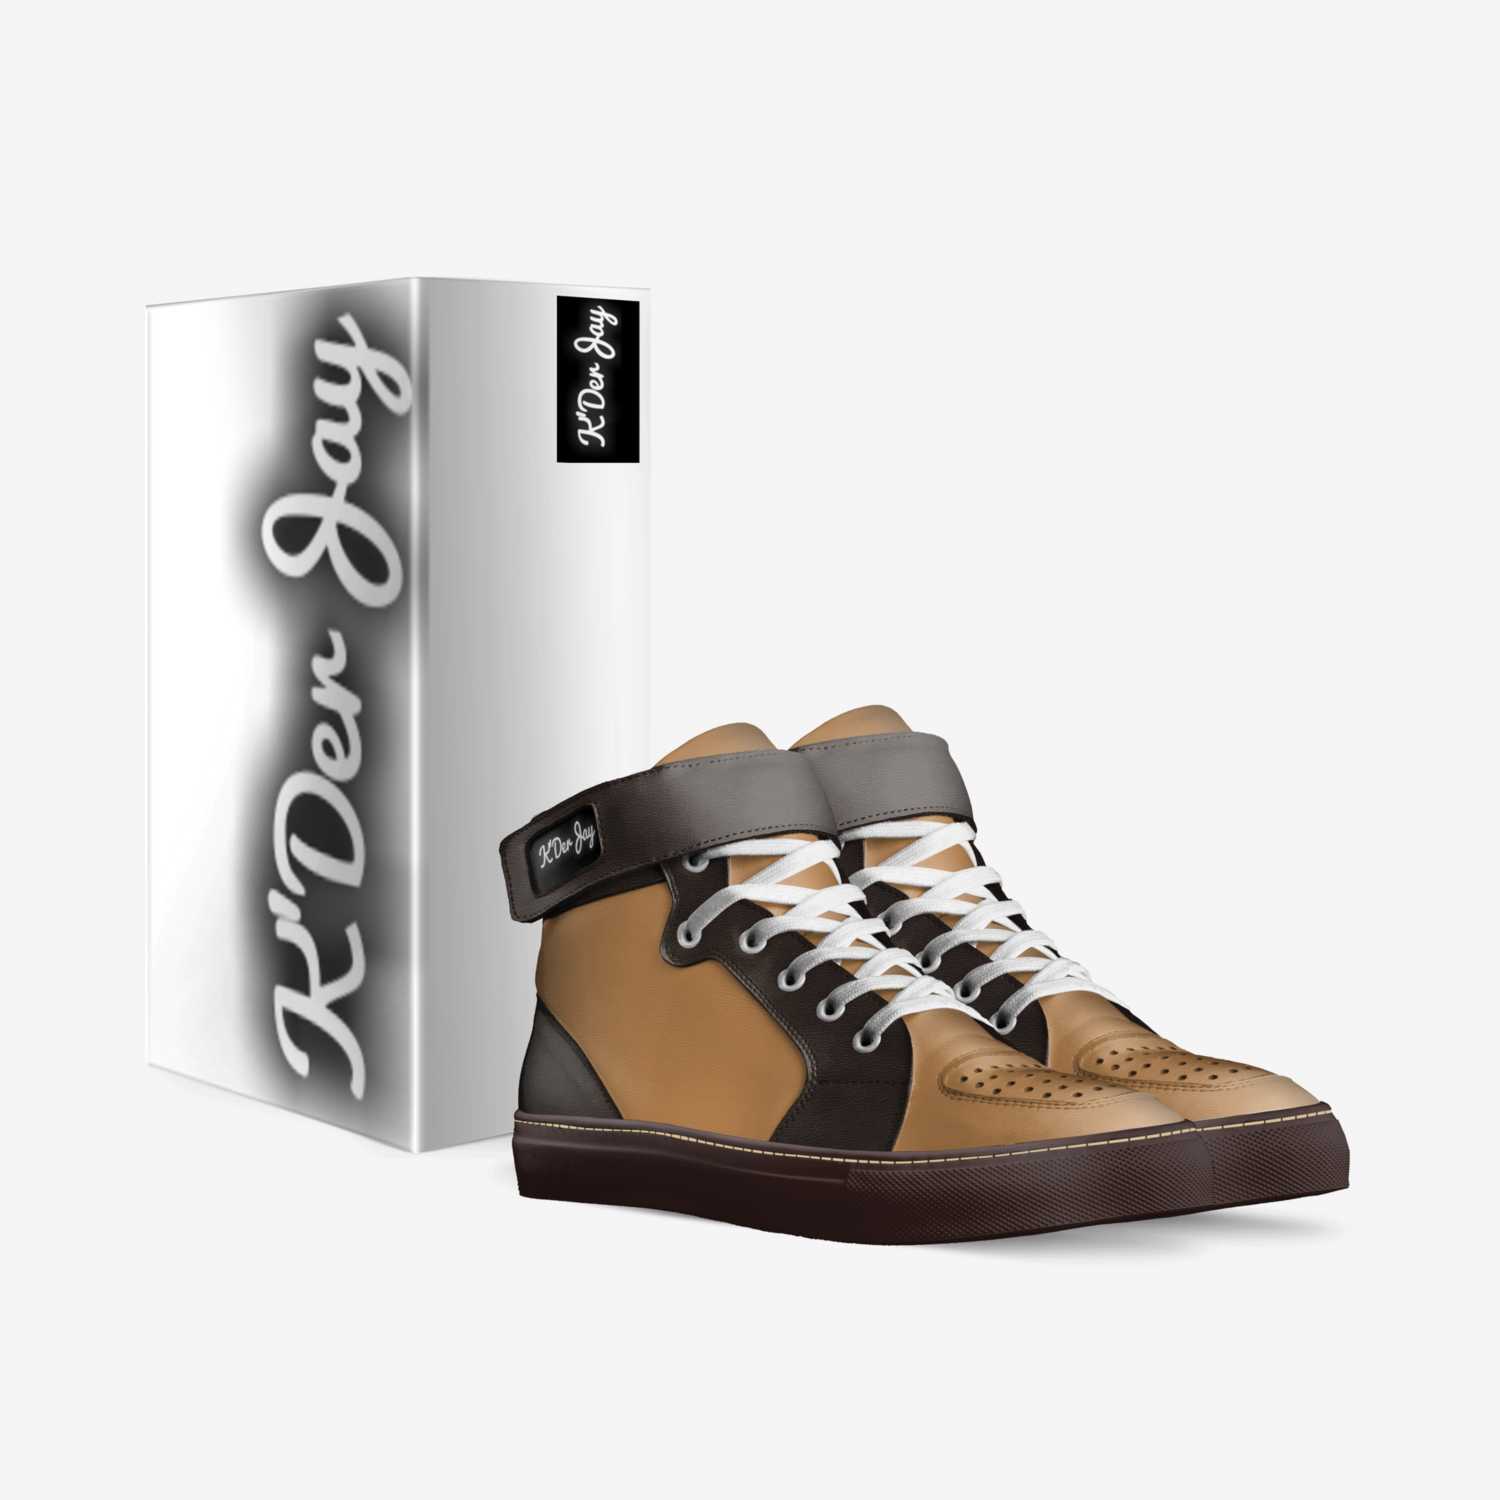 K'derjay custom made in Italy shoes by Kderjay Arminova | Box view